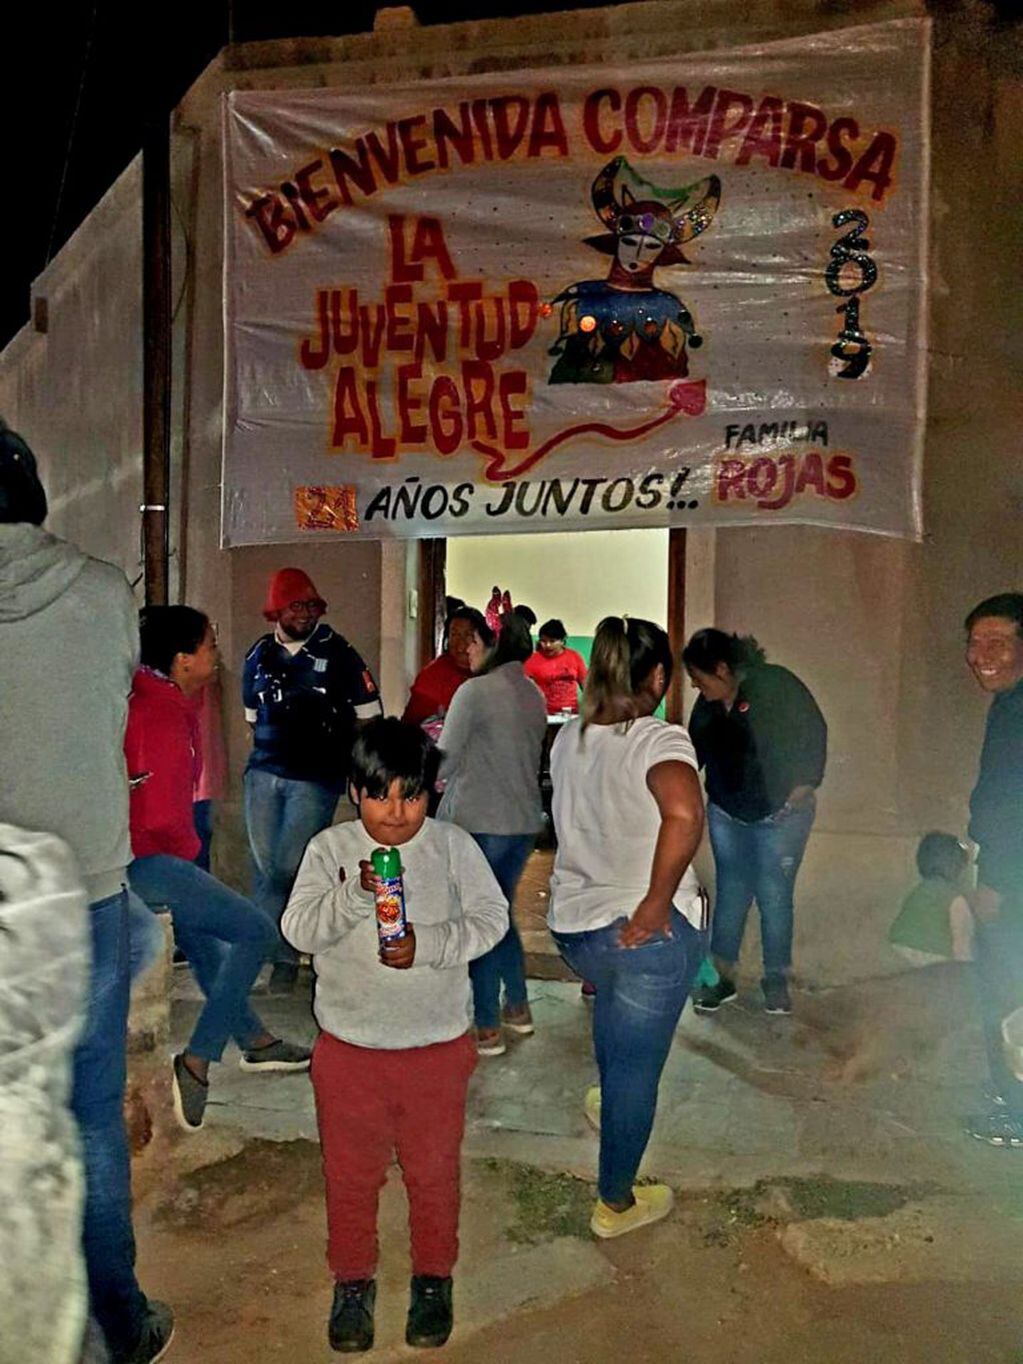 La familia Rojas sigue la tradición de invitar a que la comparsa "La Juventud Alegre" visite su casa, trayendo con su alegría buenos augurios para lo que resta del año.